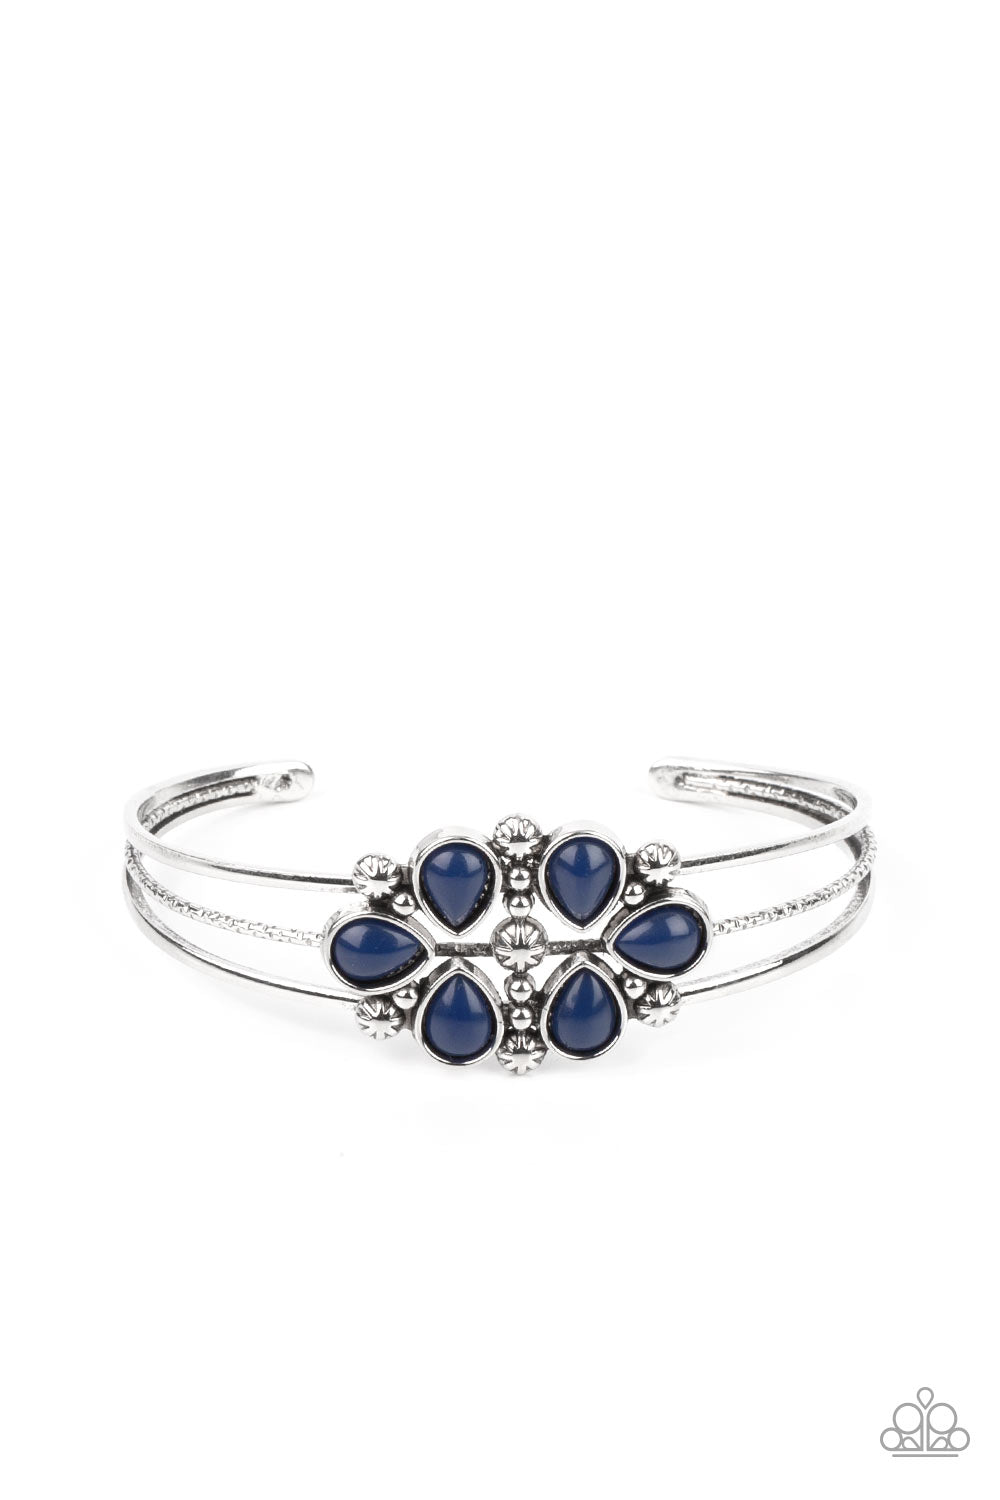 PRE-ORDER - Paparazzi Taj Mahal Meadow - Blue - Bracelet - $5 Jewelry with Ashley Swint